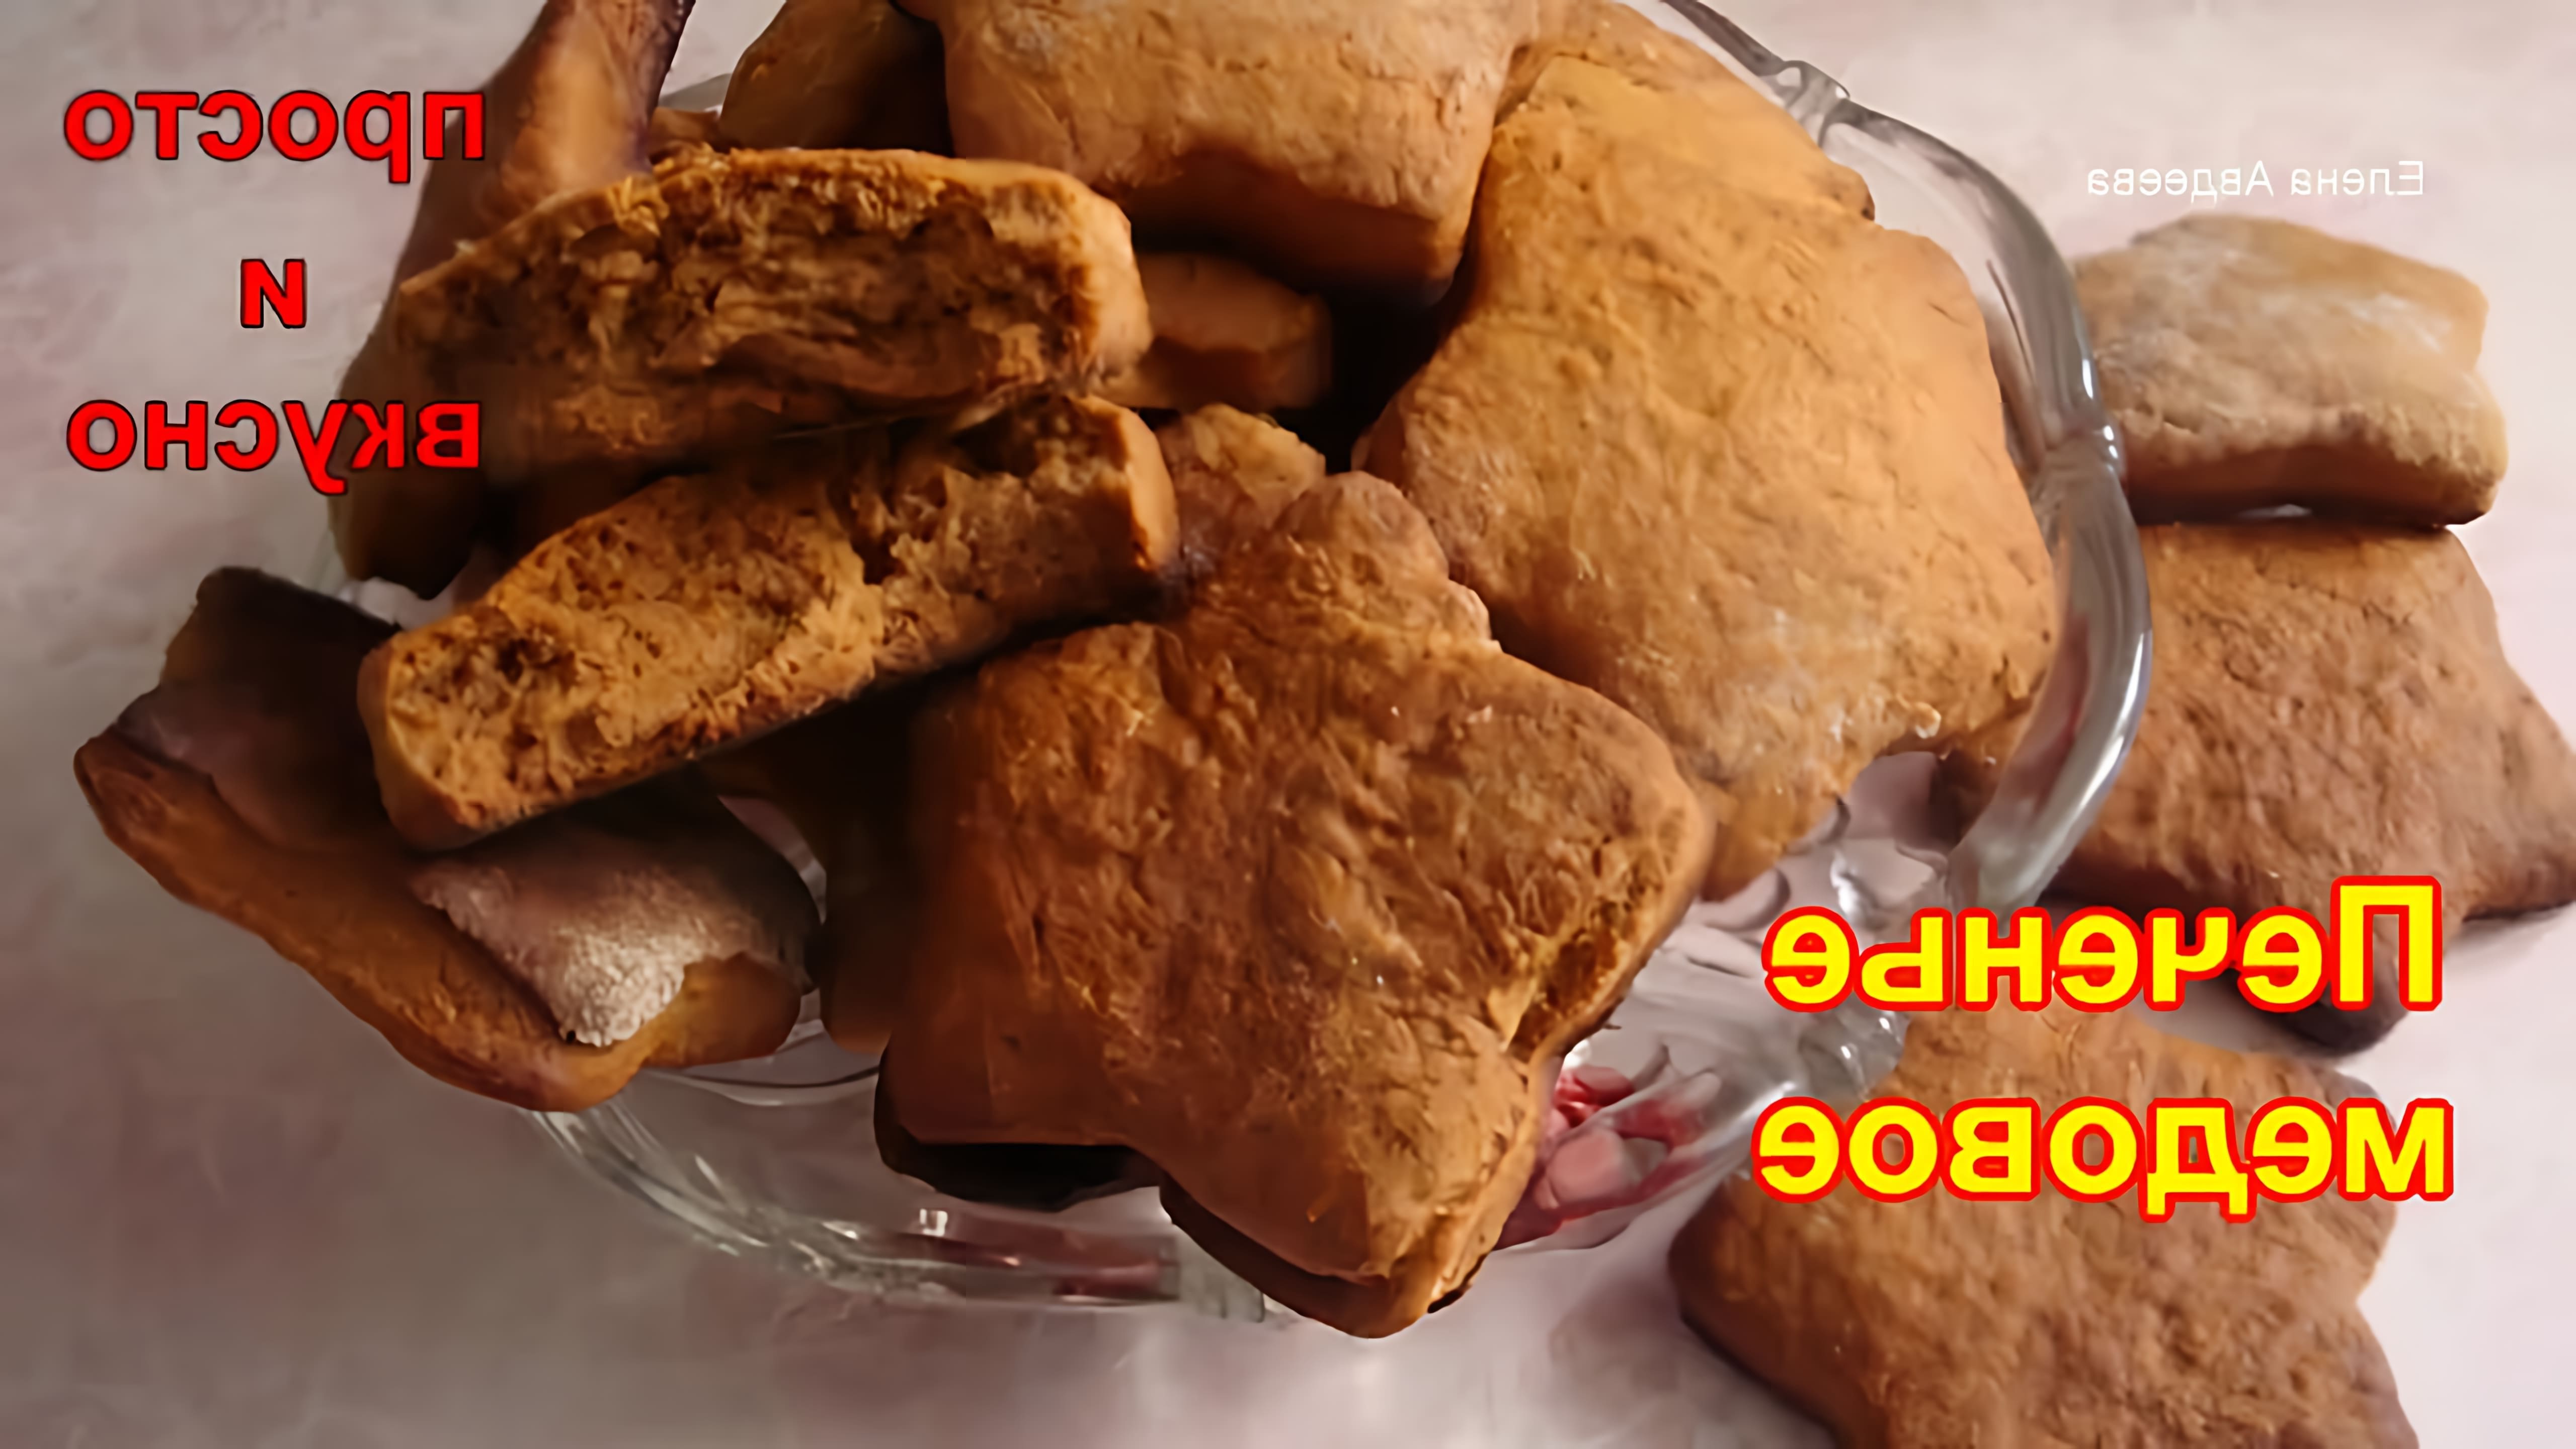 В этом видео демонстрируется процесс приготовления медового печенья без сахара